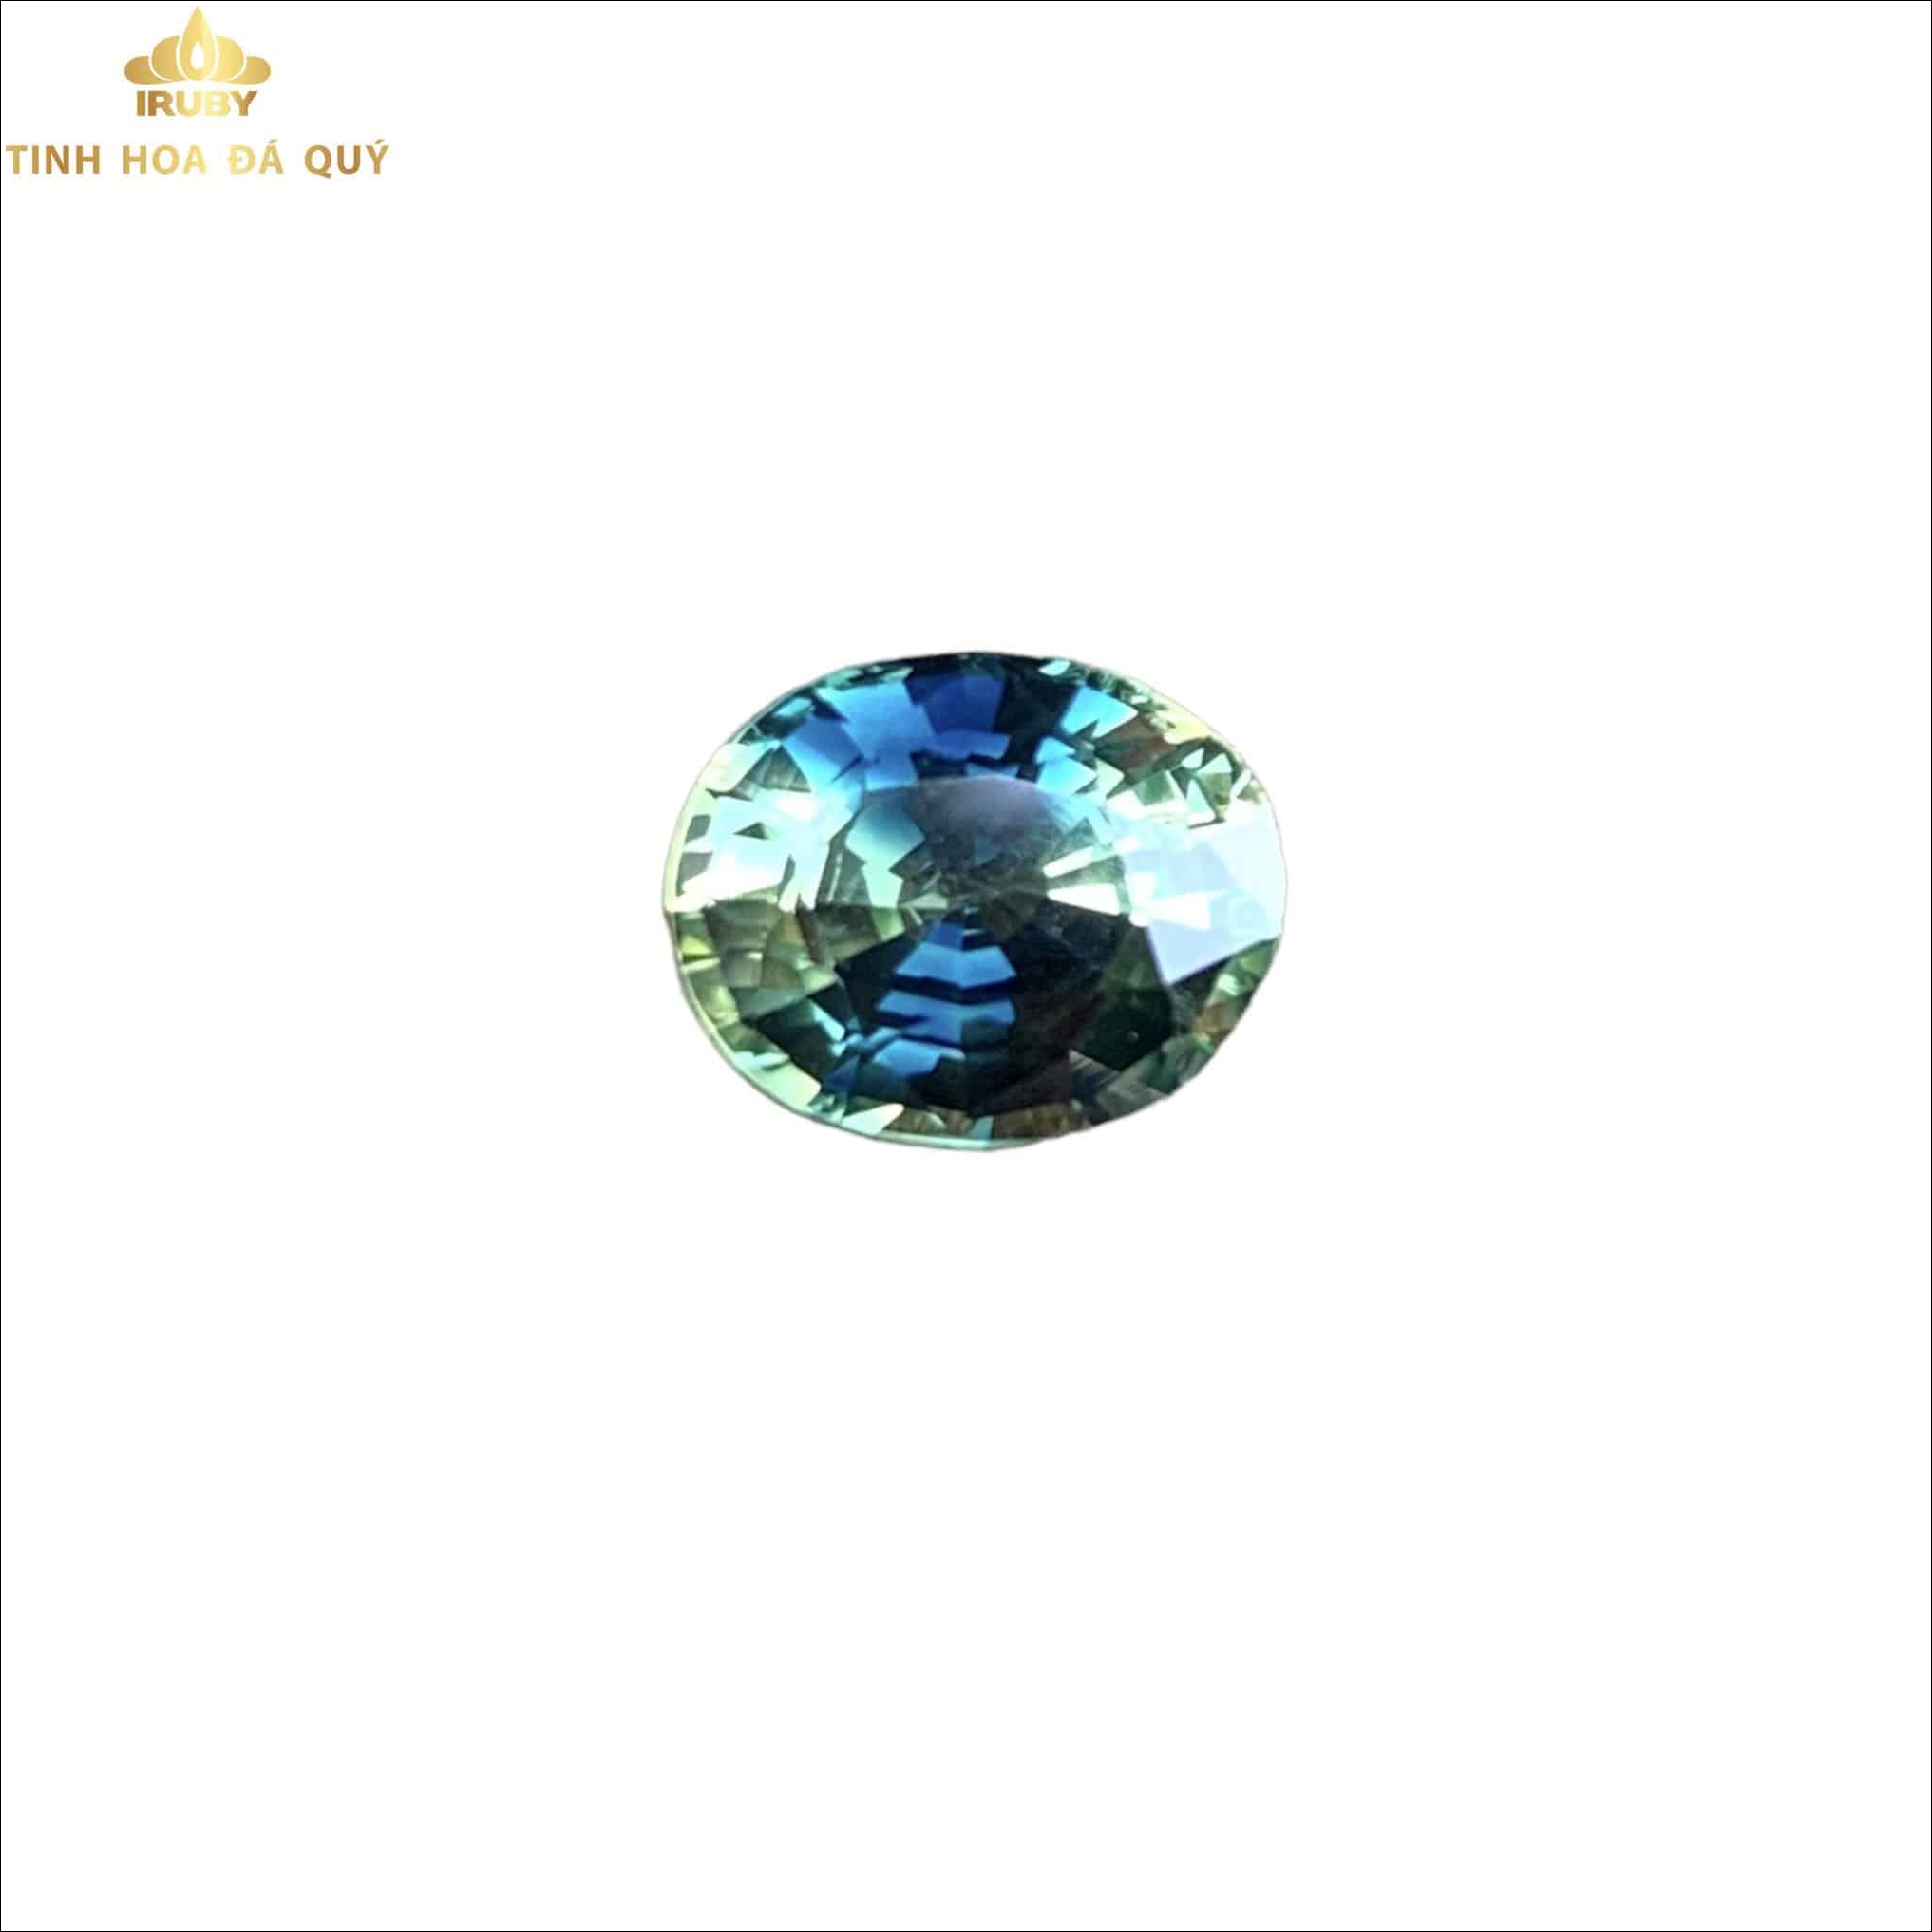 Viên Sapphire bicolor 3 màu độc hiếm đẹp 3ct - IRSP 22113